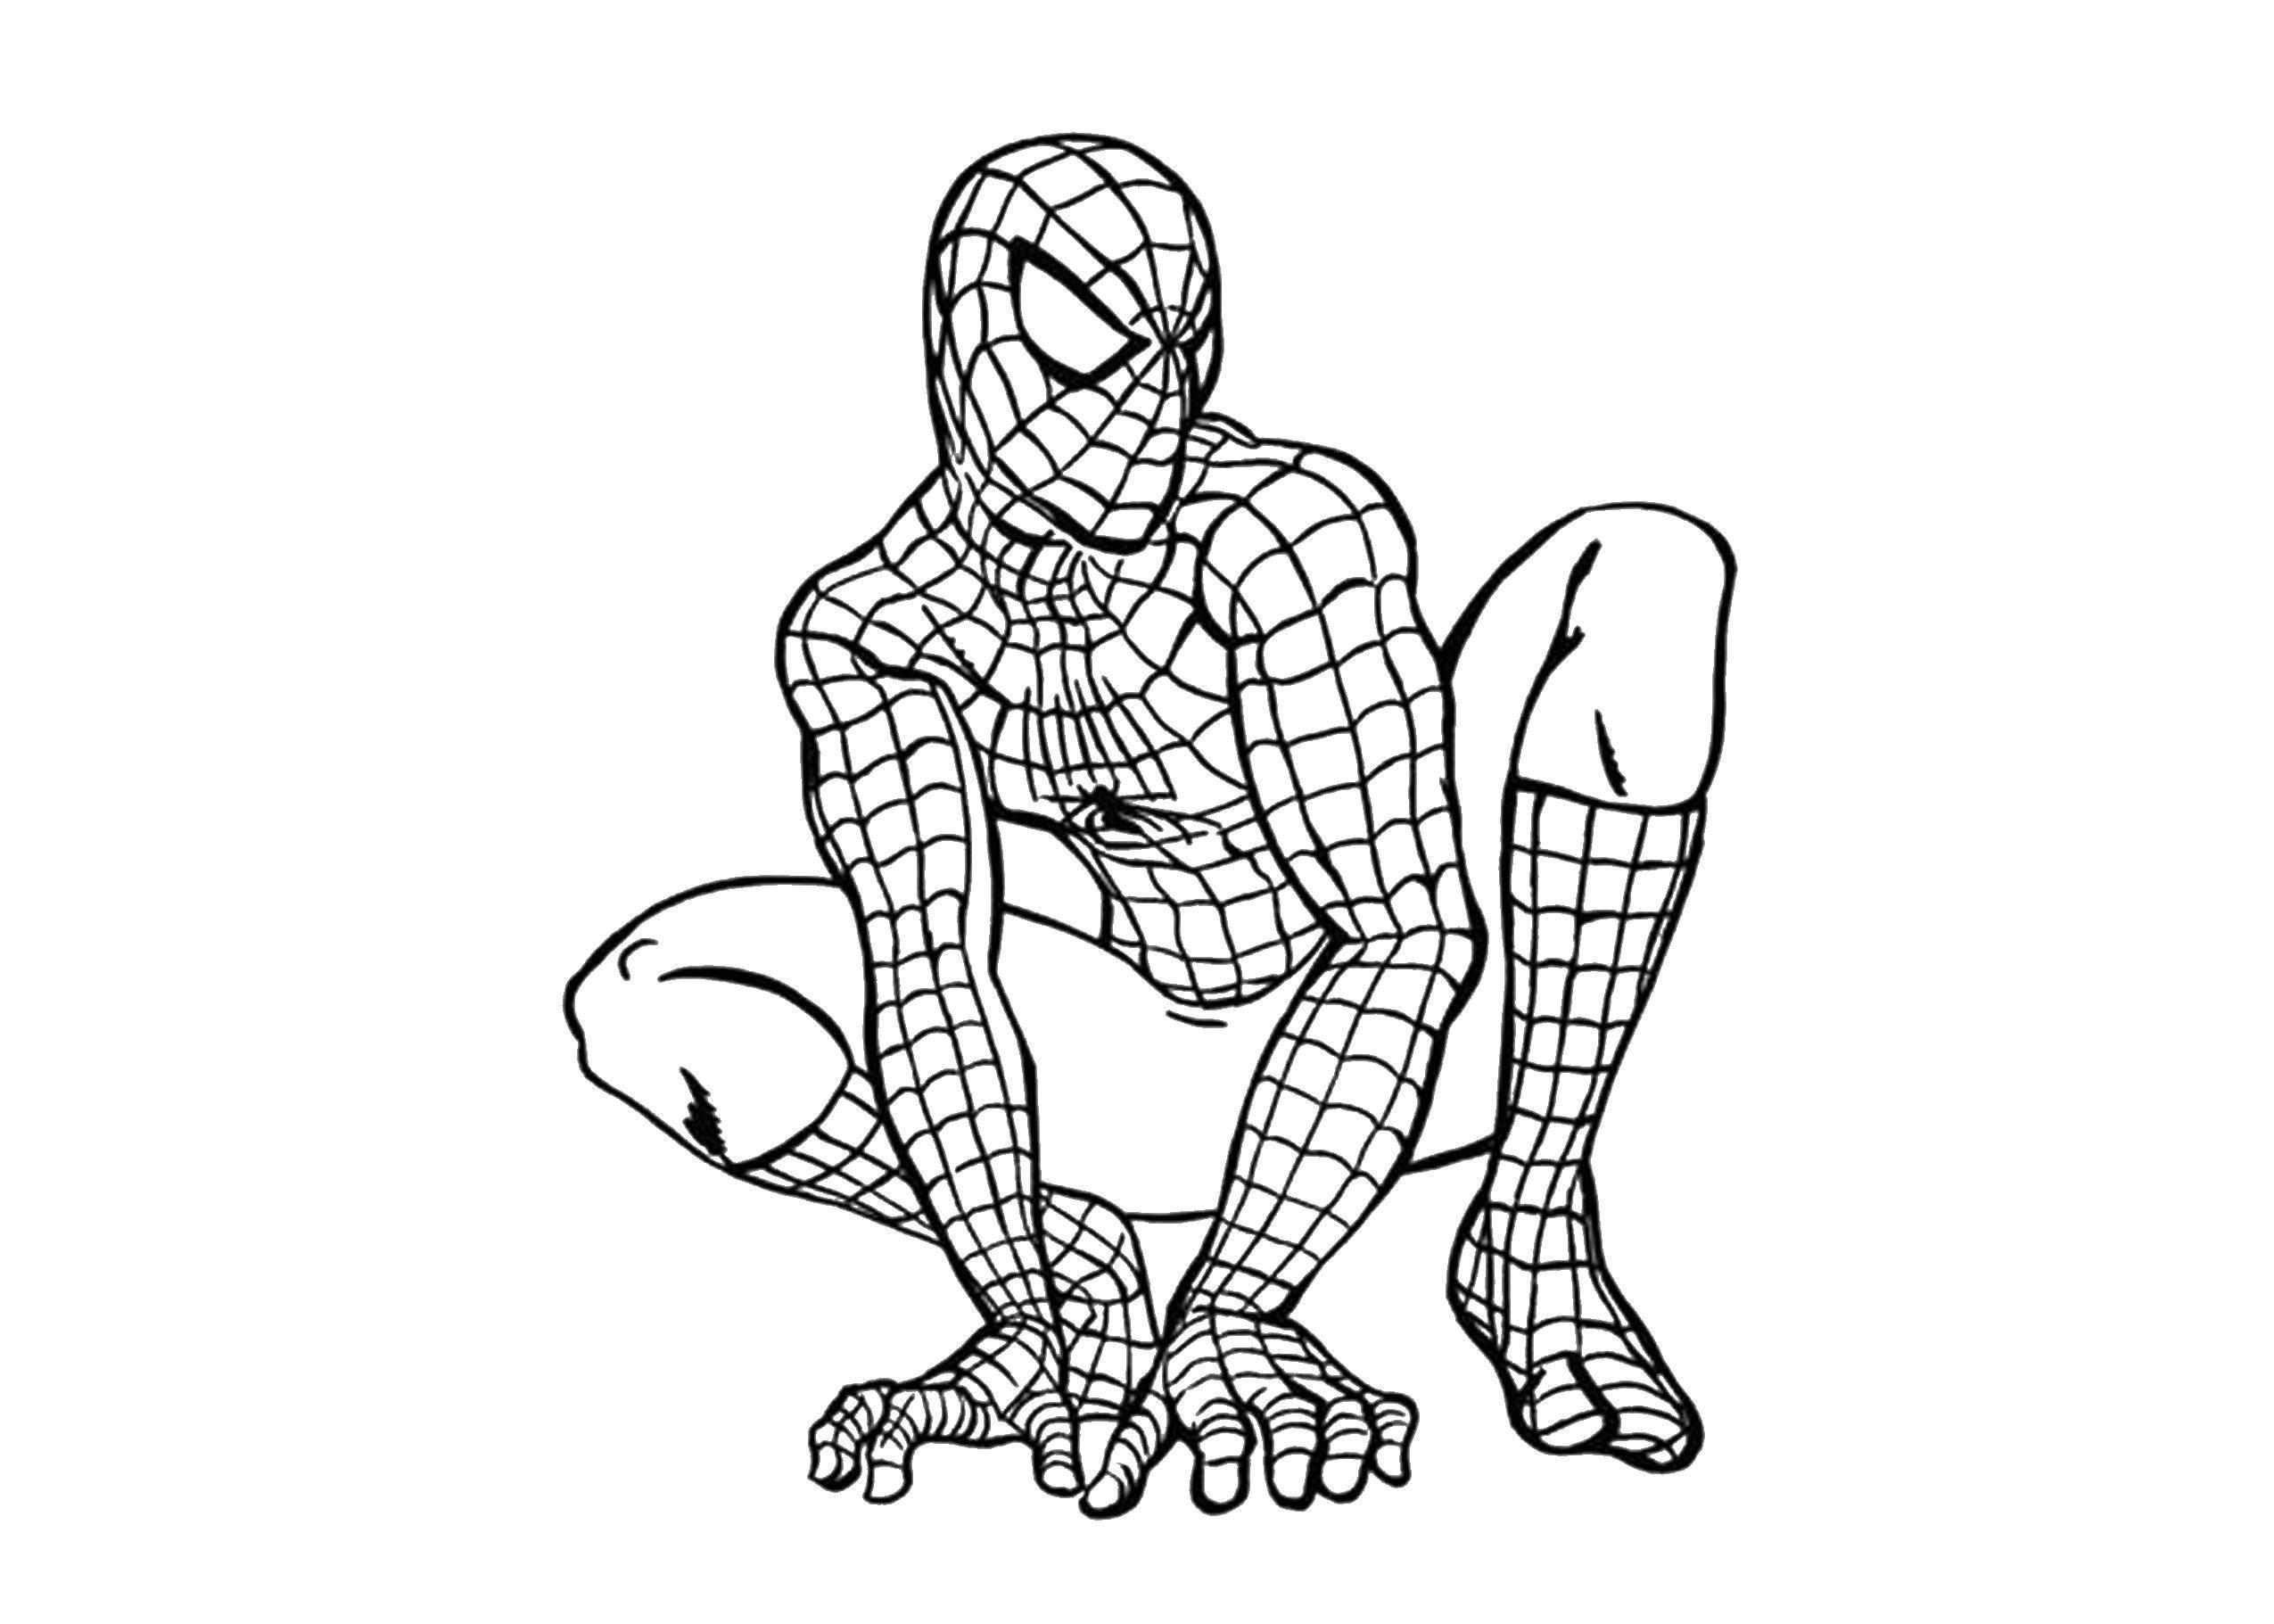 Название: Раскраска Человек паук. Категория: супергерои. Теги: человек паук, супергерои.